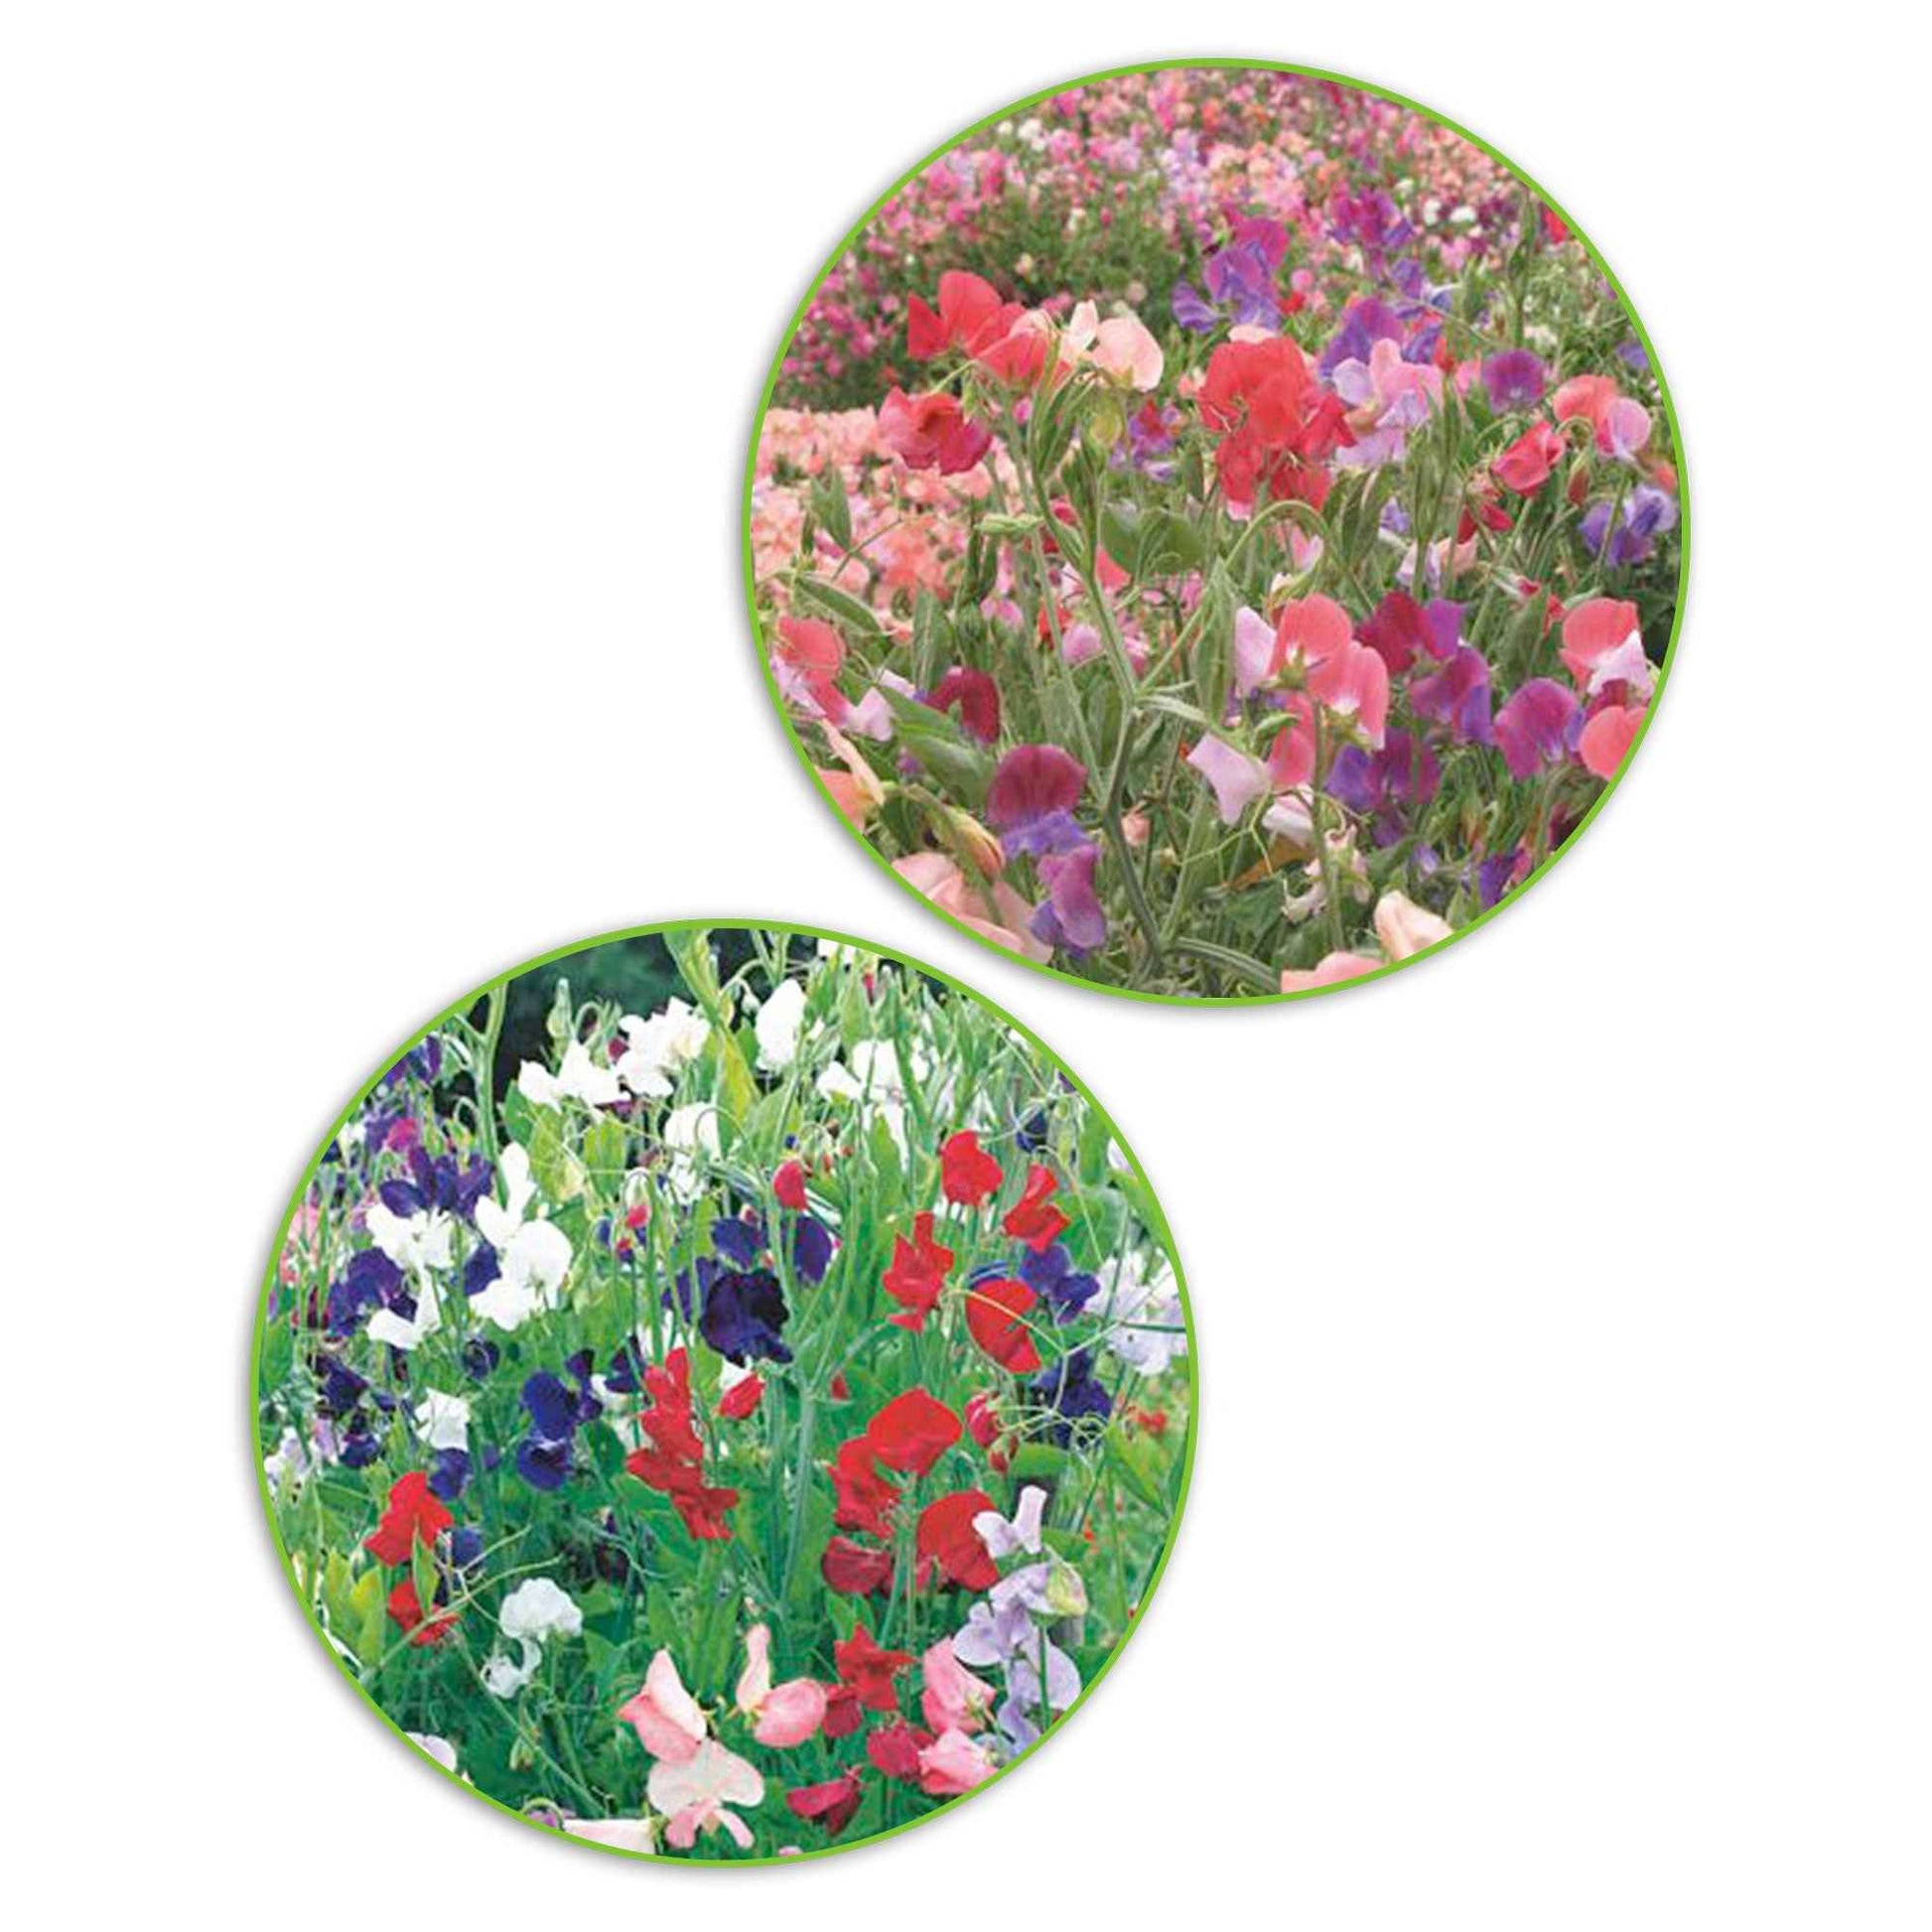 Paquet de pois de senteur Lathyrus 'Bouquet coquet' - Biologique 3 m² - Semences de fleurs - Graines